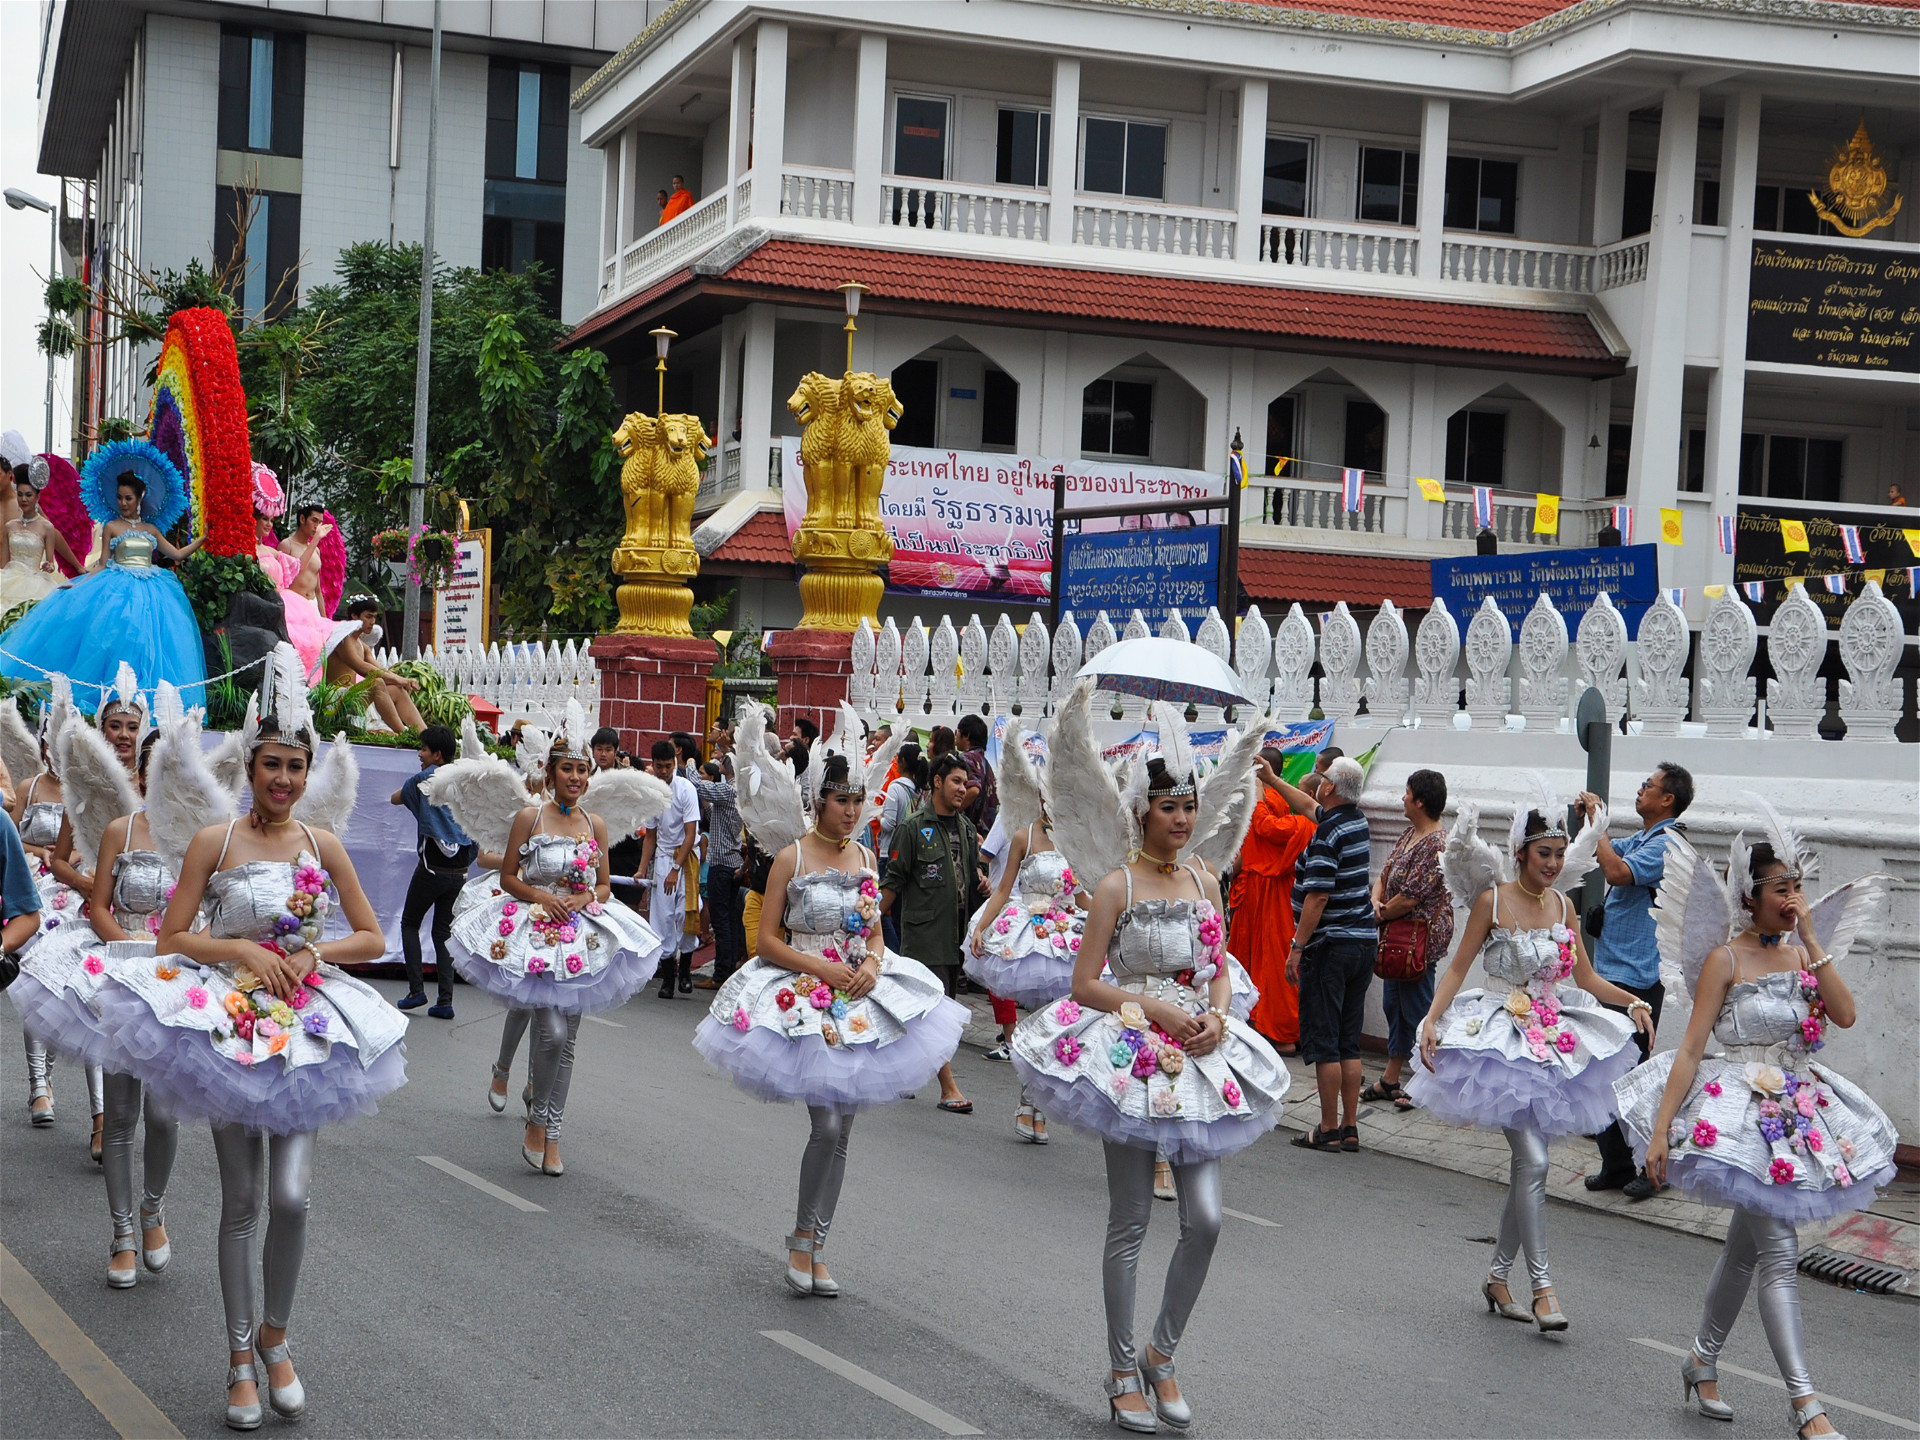 азиаткие девушки в платьях с цветами на улице